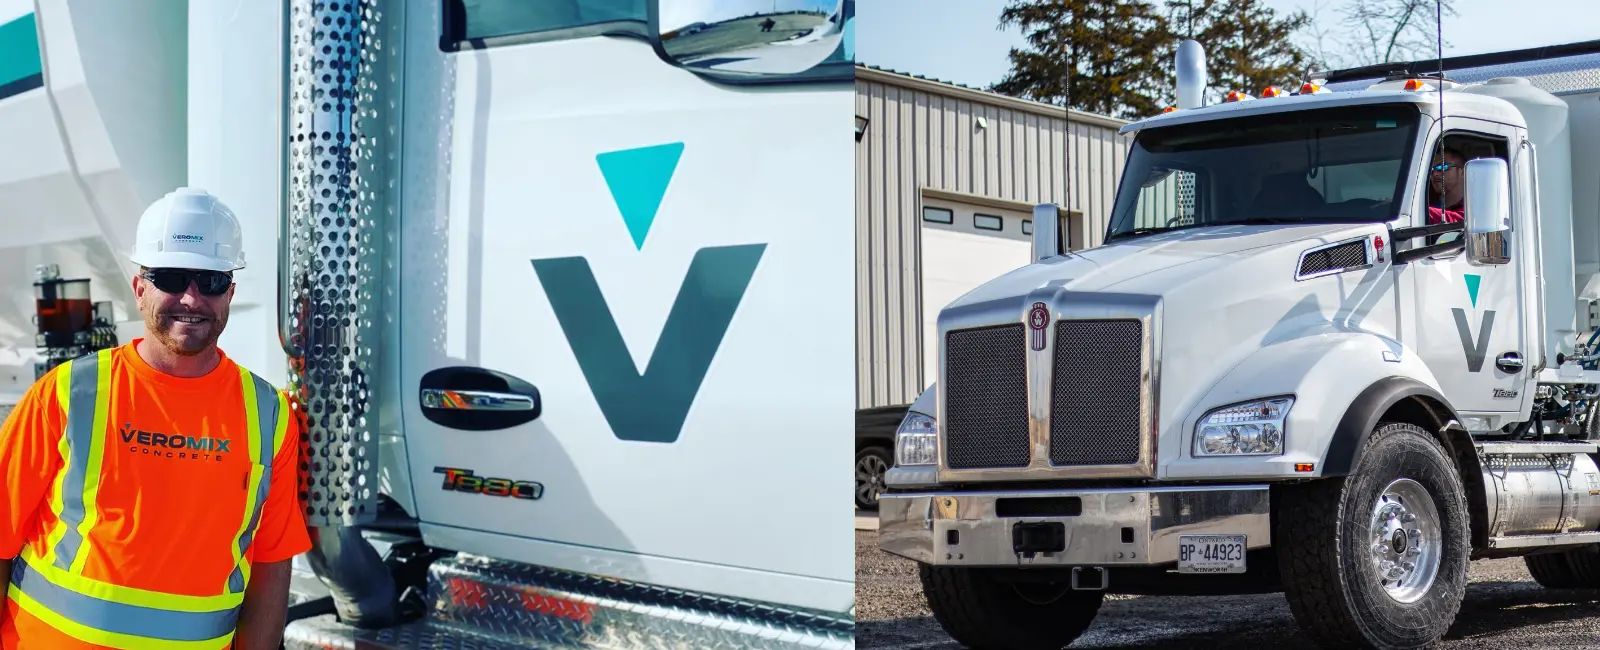 Veromix Concrete Truck Wrap